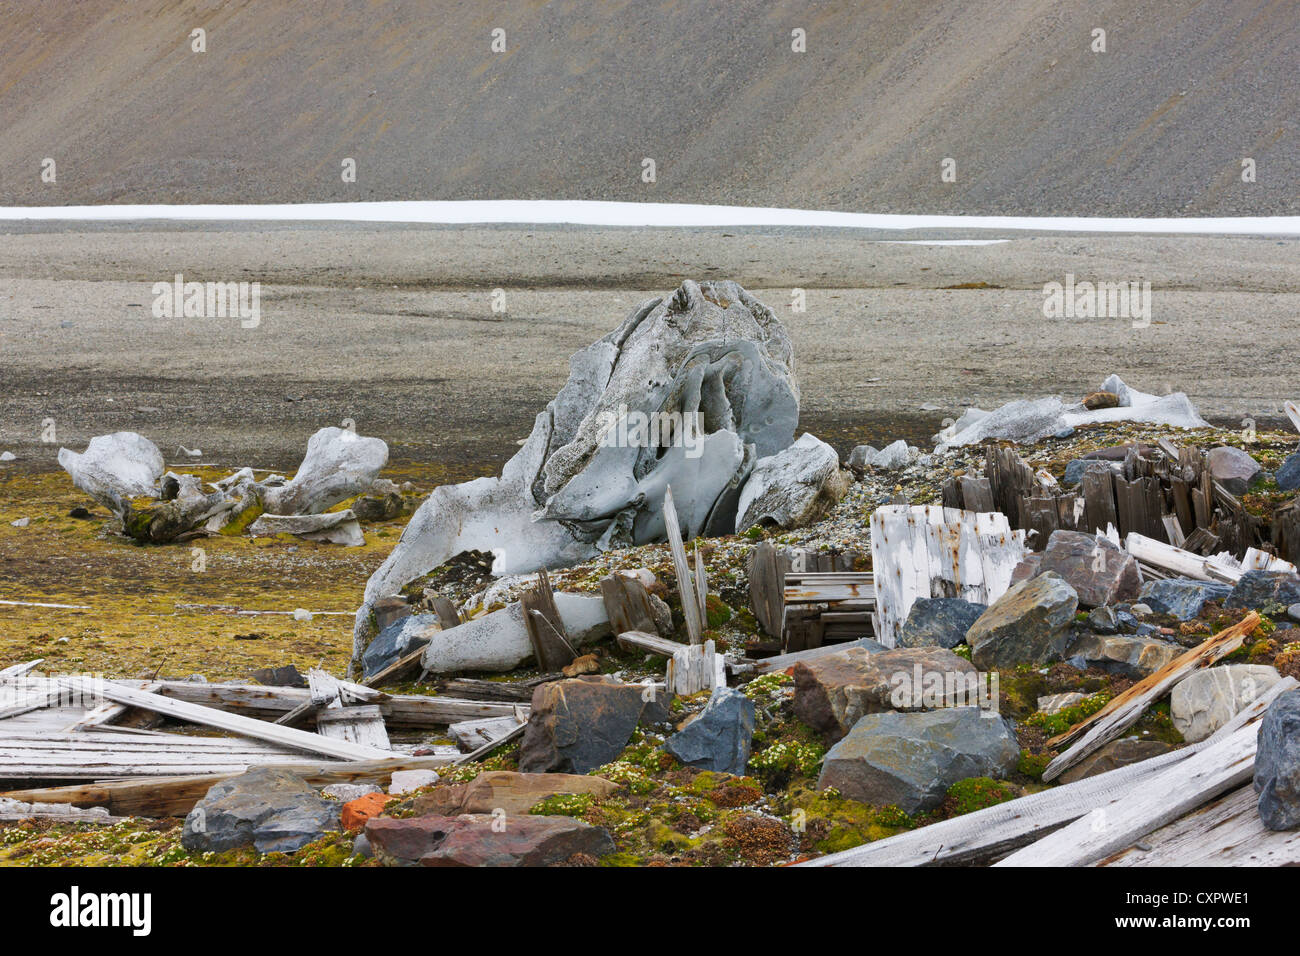 Beluga Whale skeleton, Burgerbukta, whaling station, Spitsbergen, Norway Stock Photo